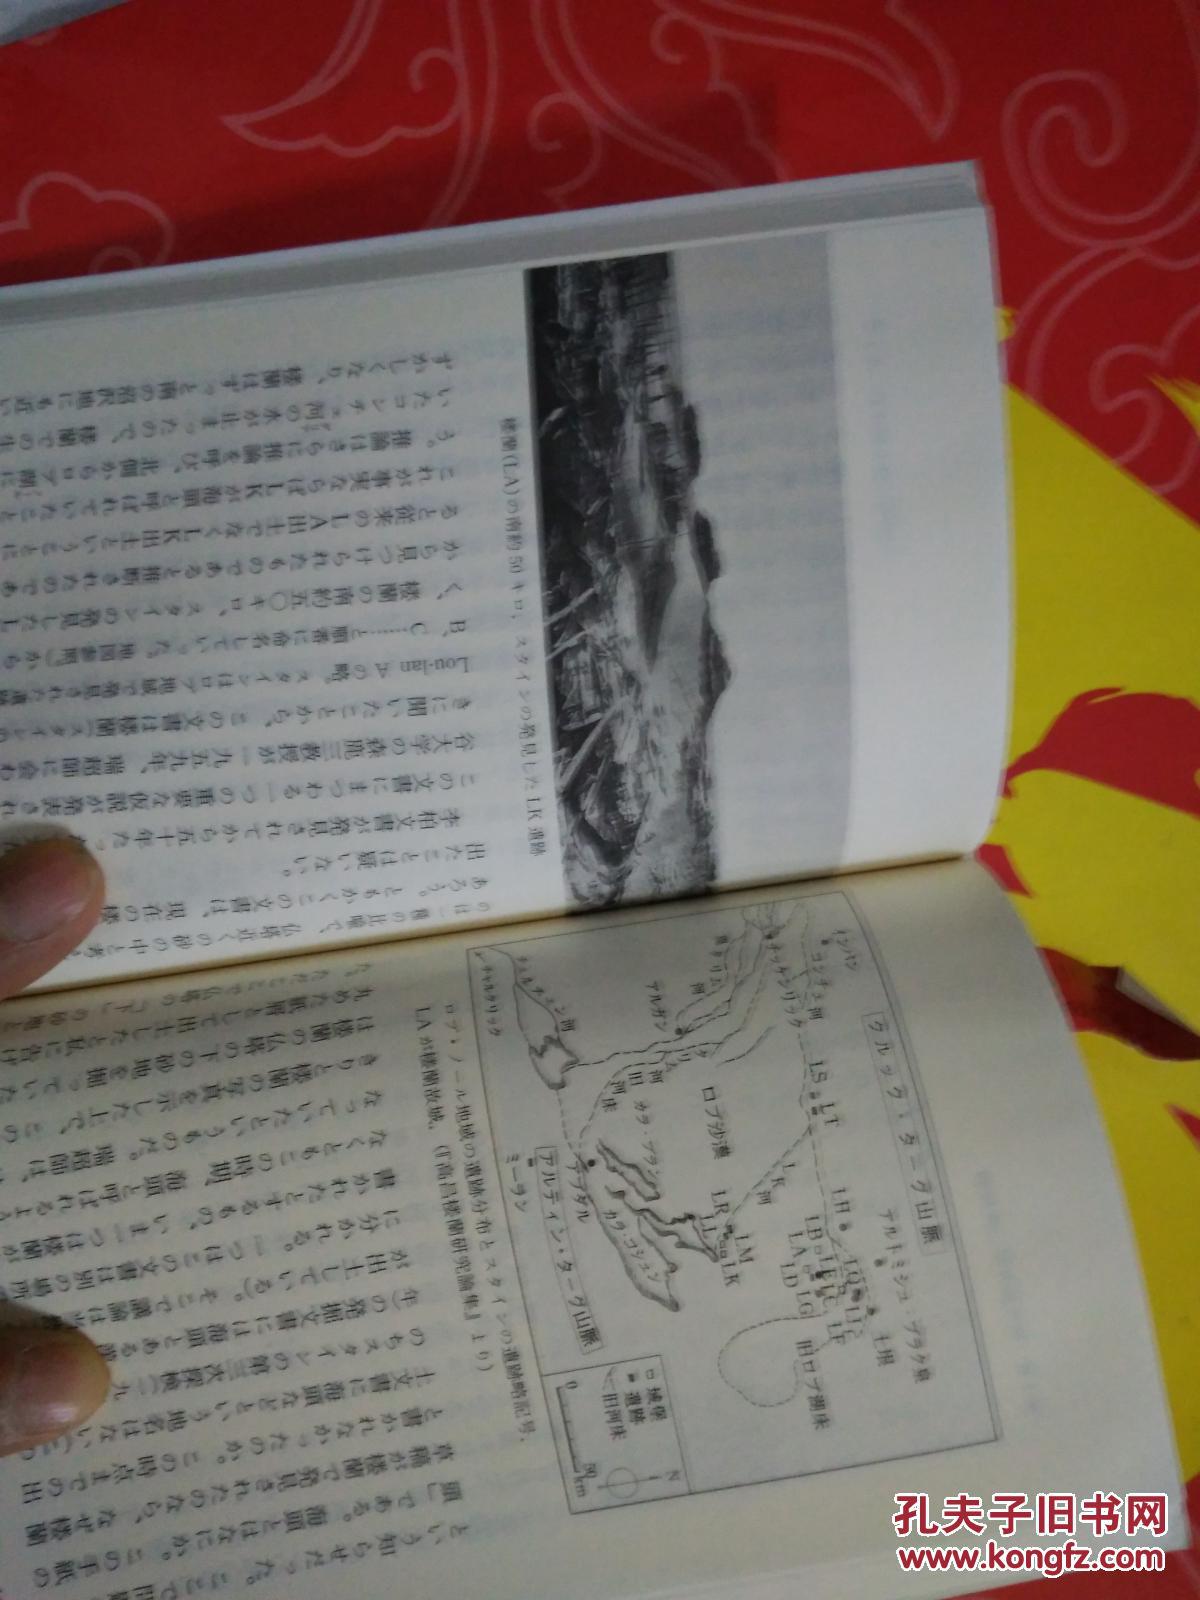 【图】孤本日语发票全新多图丝绸路竞争探险史